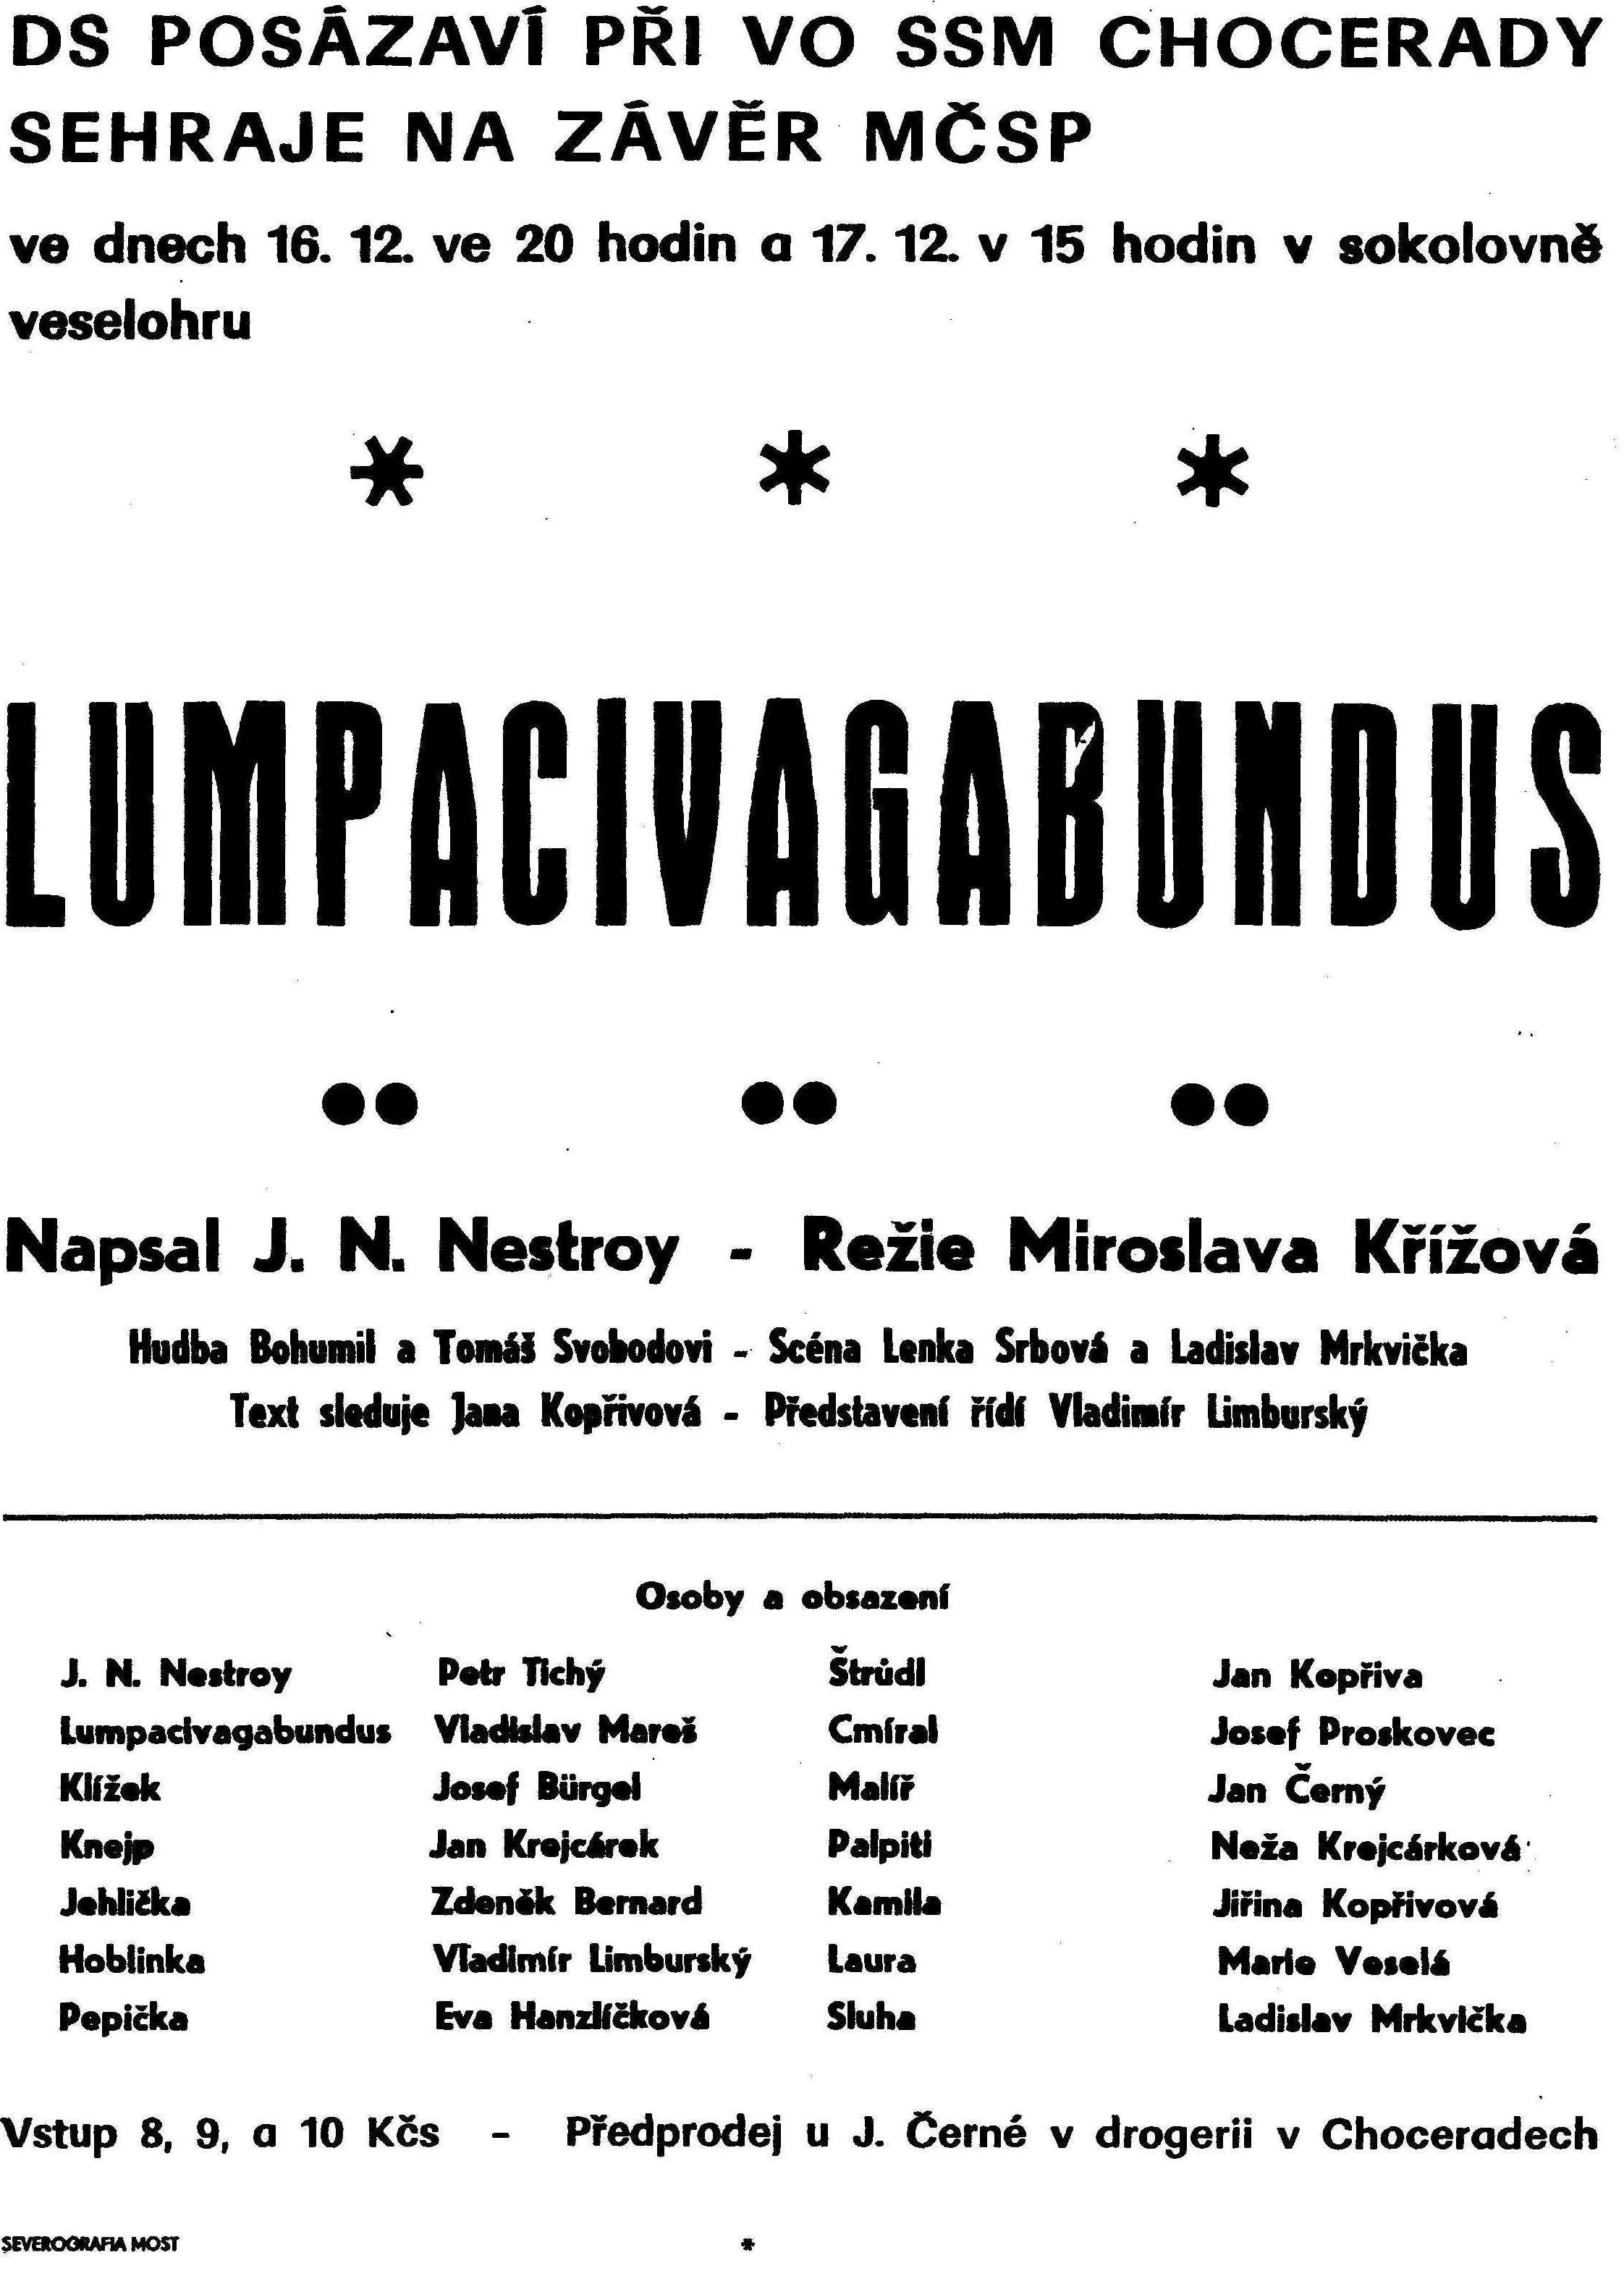 1978 - Lumpacivagabundus - 2.jpg